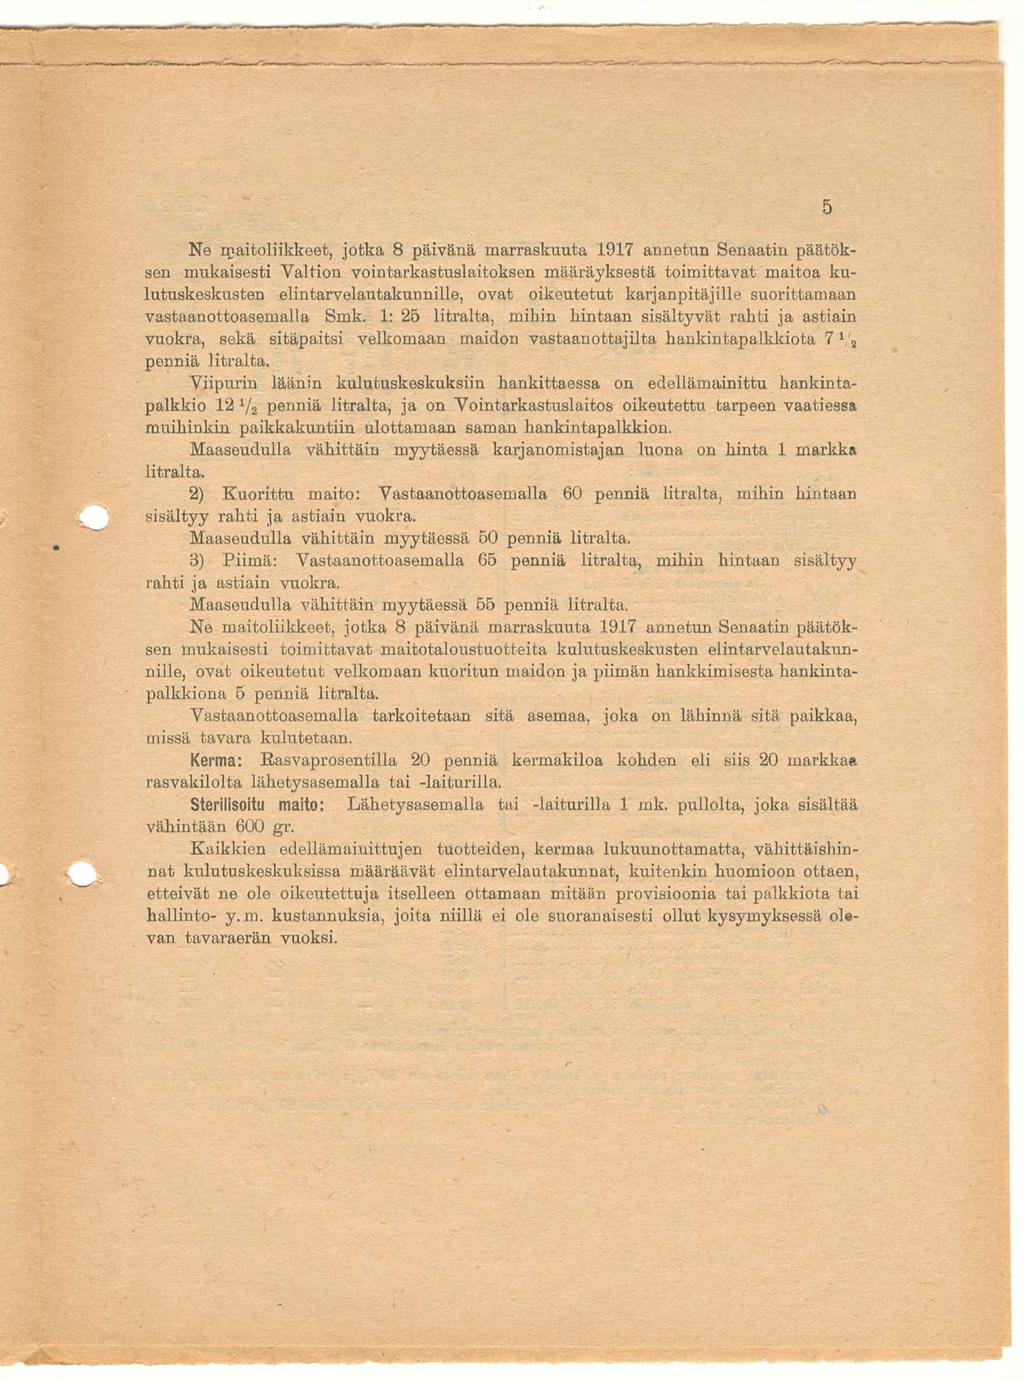 Ne qjaitoliikkeet, jotka 8 päivänä marraskuuta 1917 annetun Senaatin päätöksen mukaisesti Valtion vointarkastuslaitoksen määräyksestä toimittavat maitoa kulutuskeskusten elintarvelautakunnille, ovat